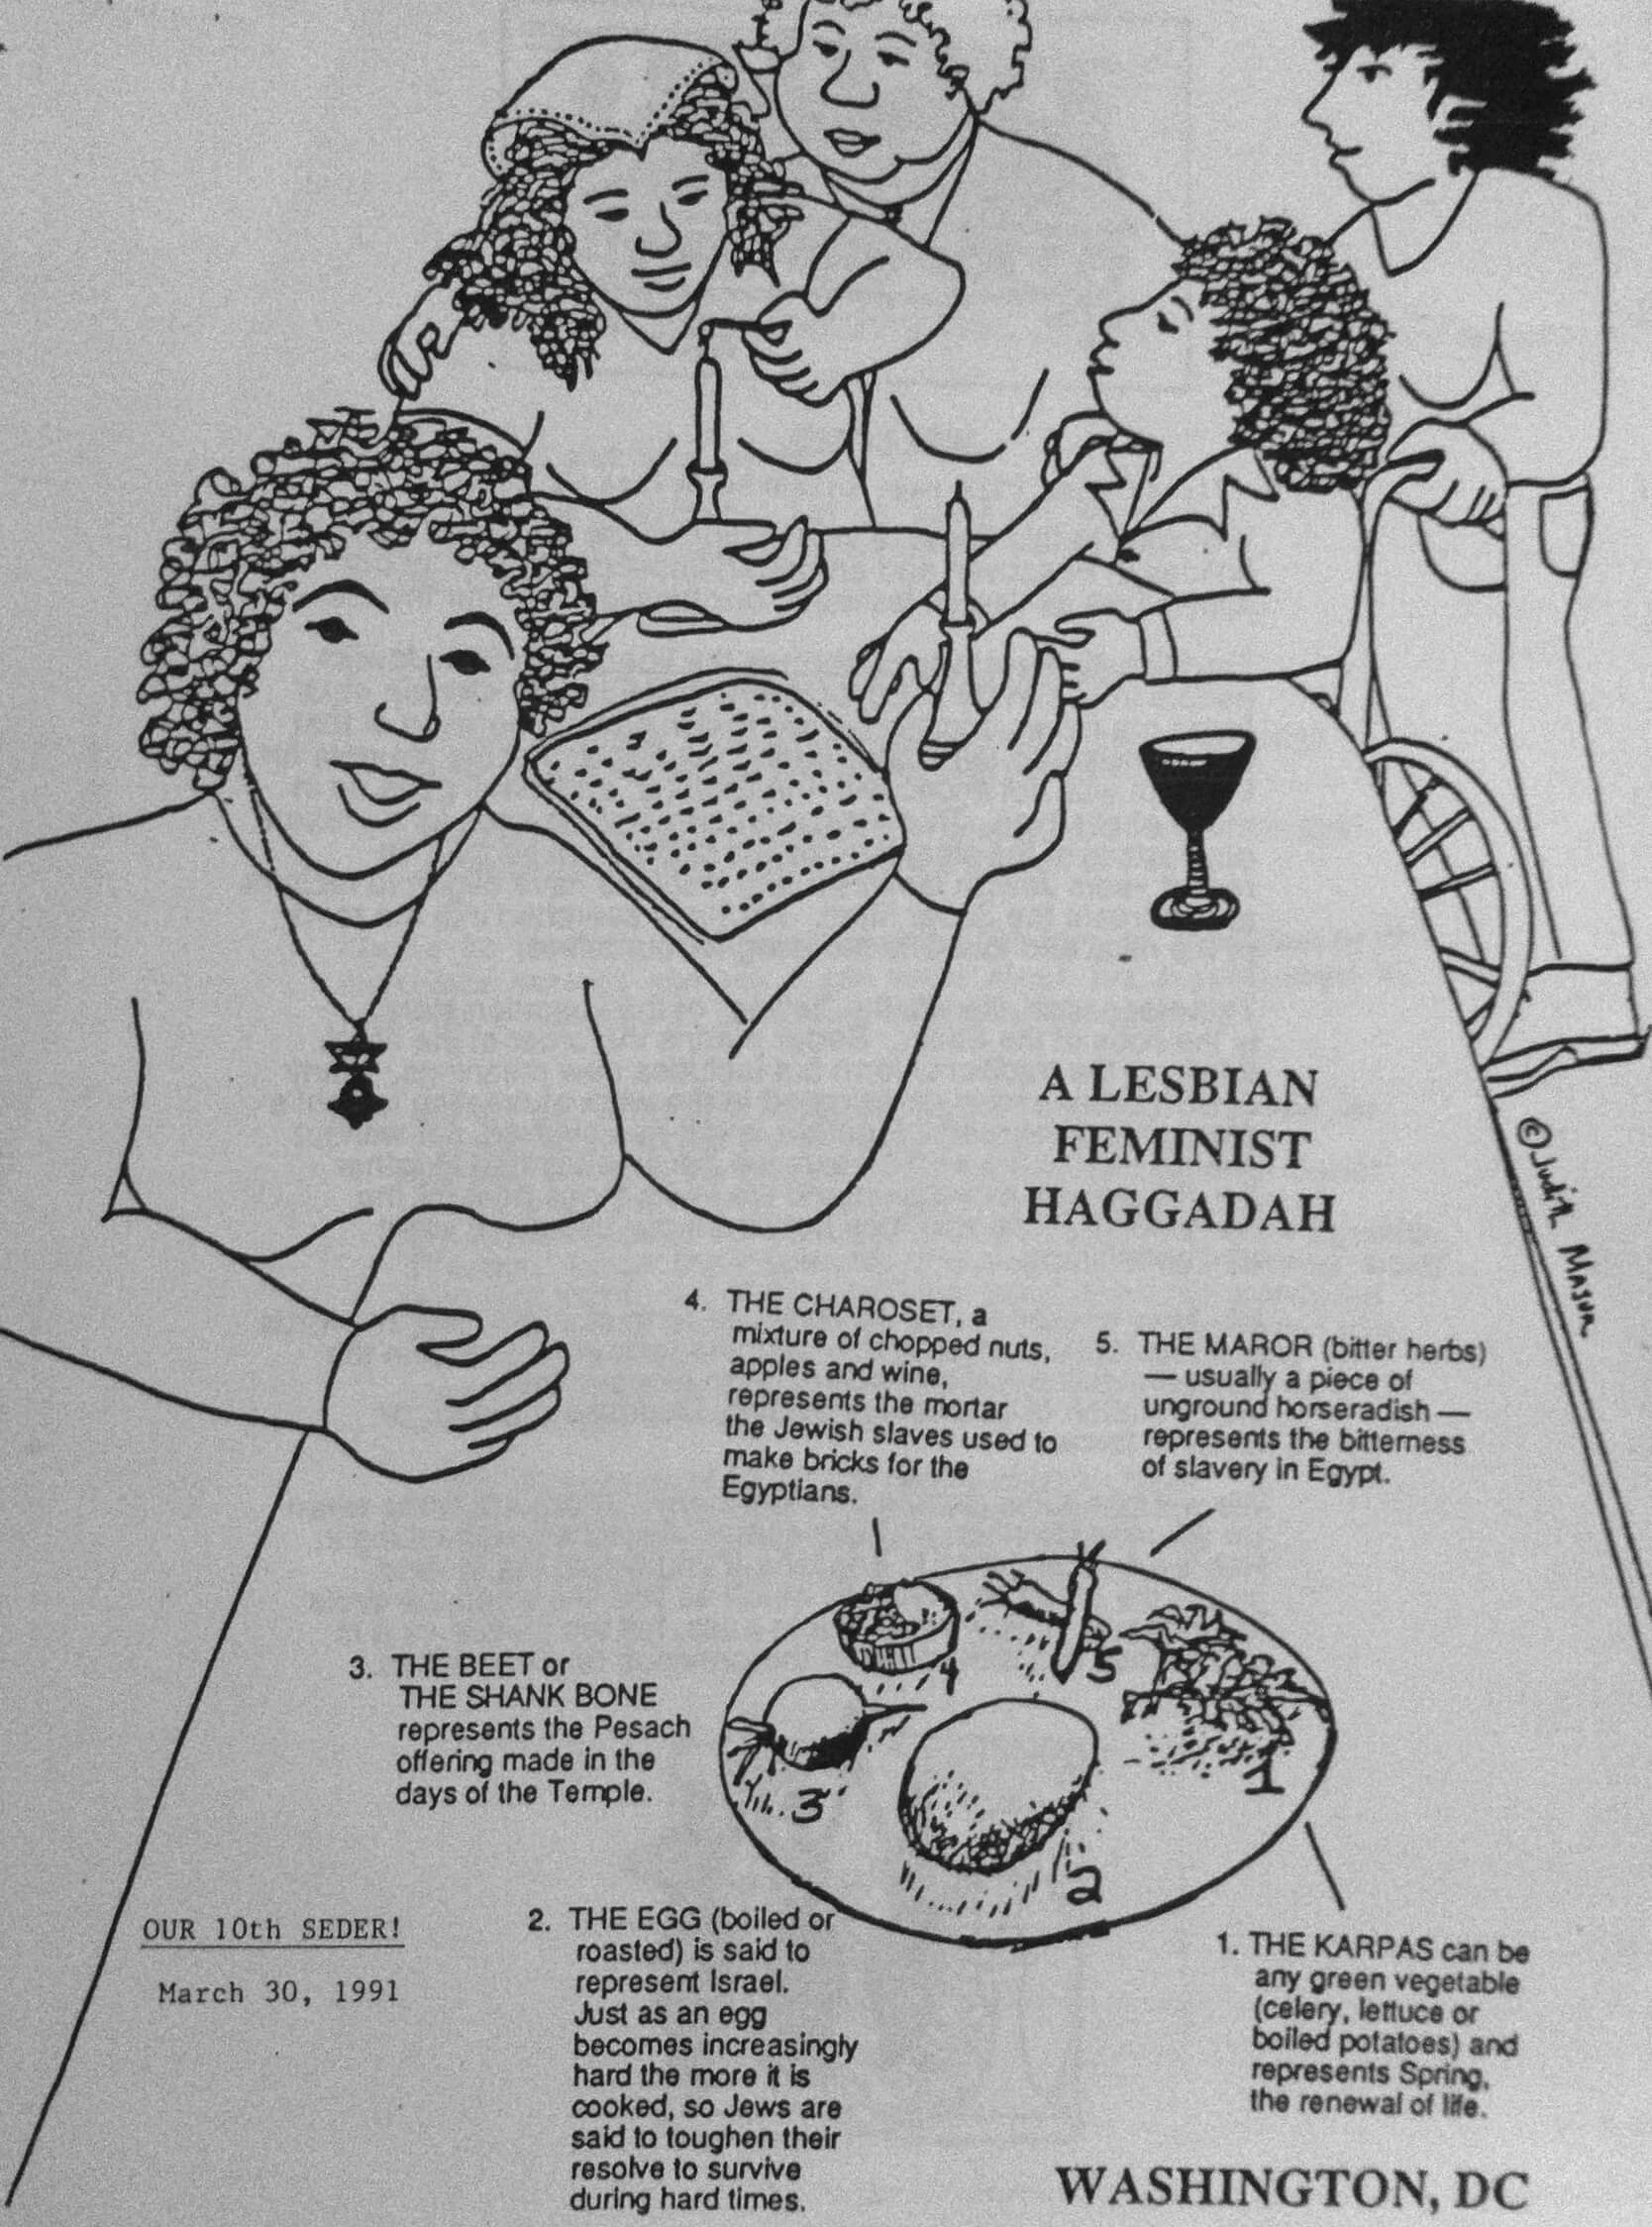 A Lesbian Feminist Haggadah: Our 10th Seder, 1991 (Cover Art by Judith Masur)